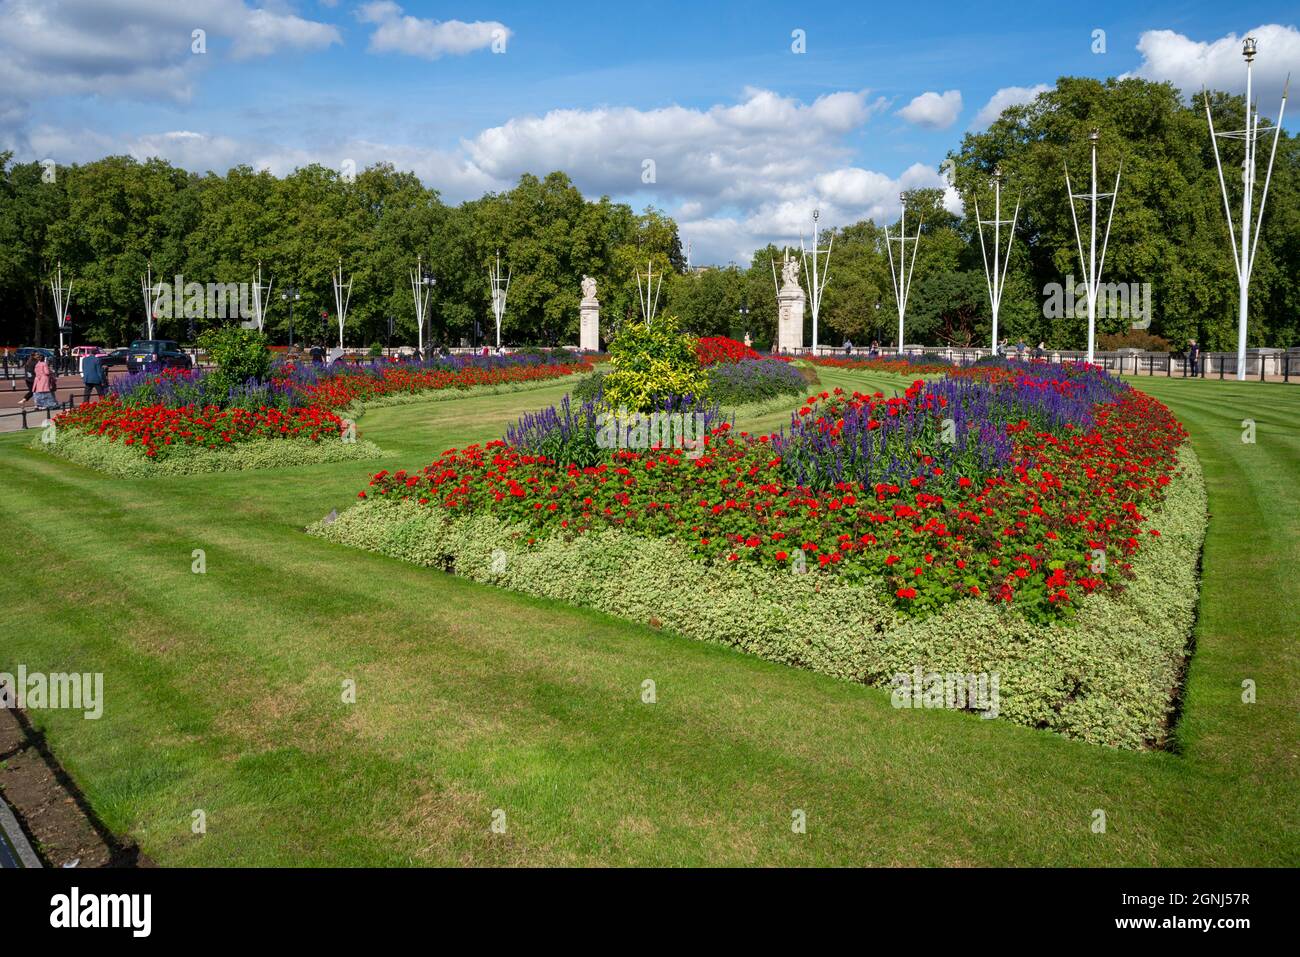 Buckingham Palace Memorial Gardens, le long du Mall, à Londres, Royaume-Uni. Pelouse tondue et bien entretenue autour des massifs fleuris Banque D'Images